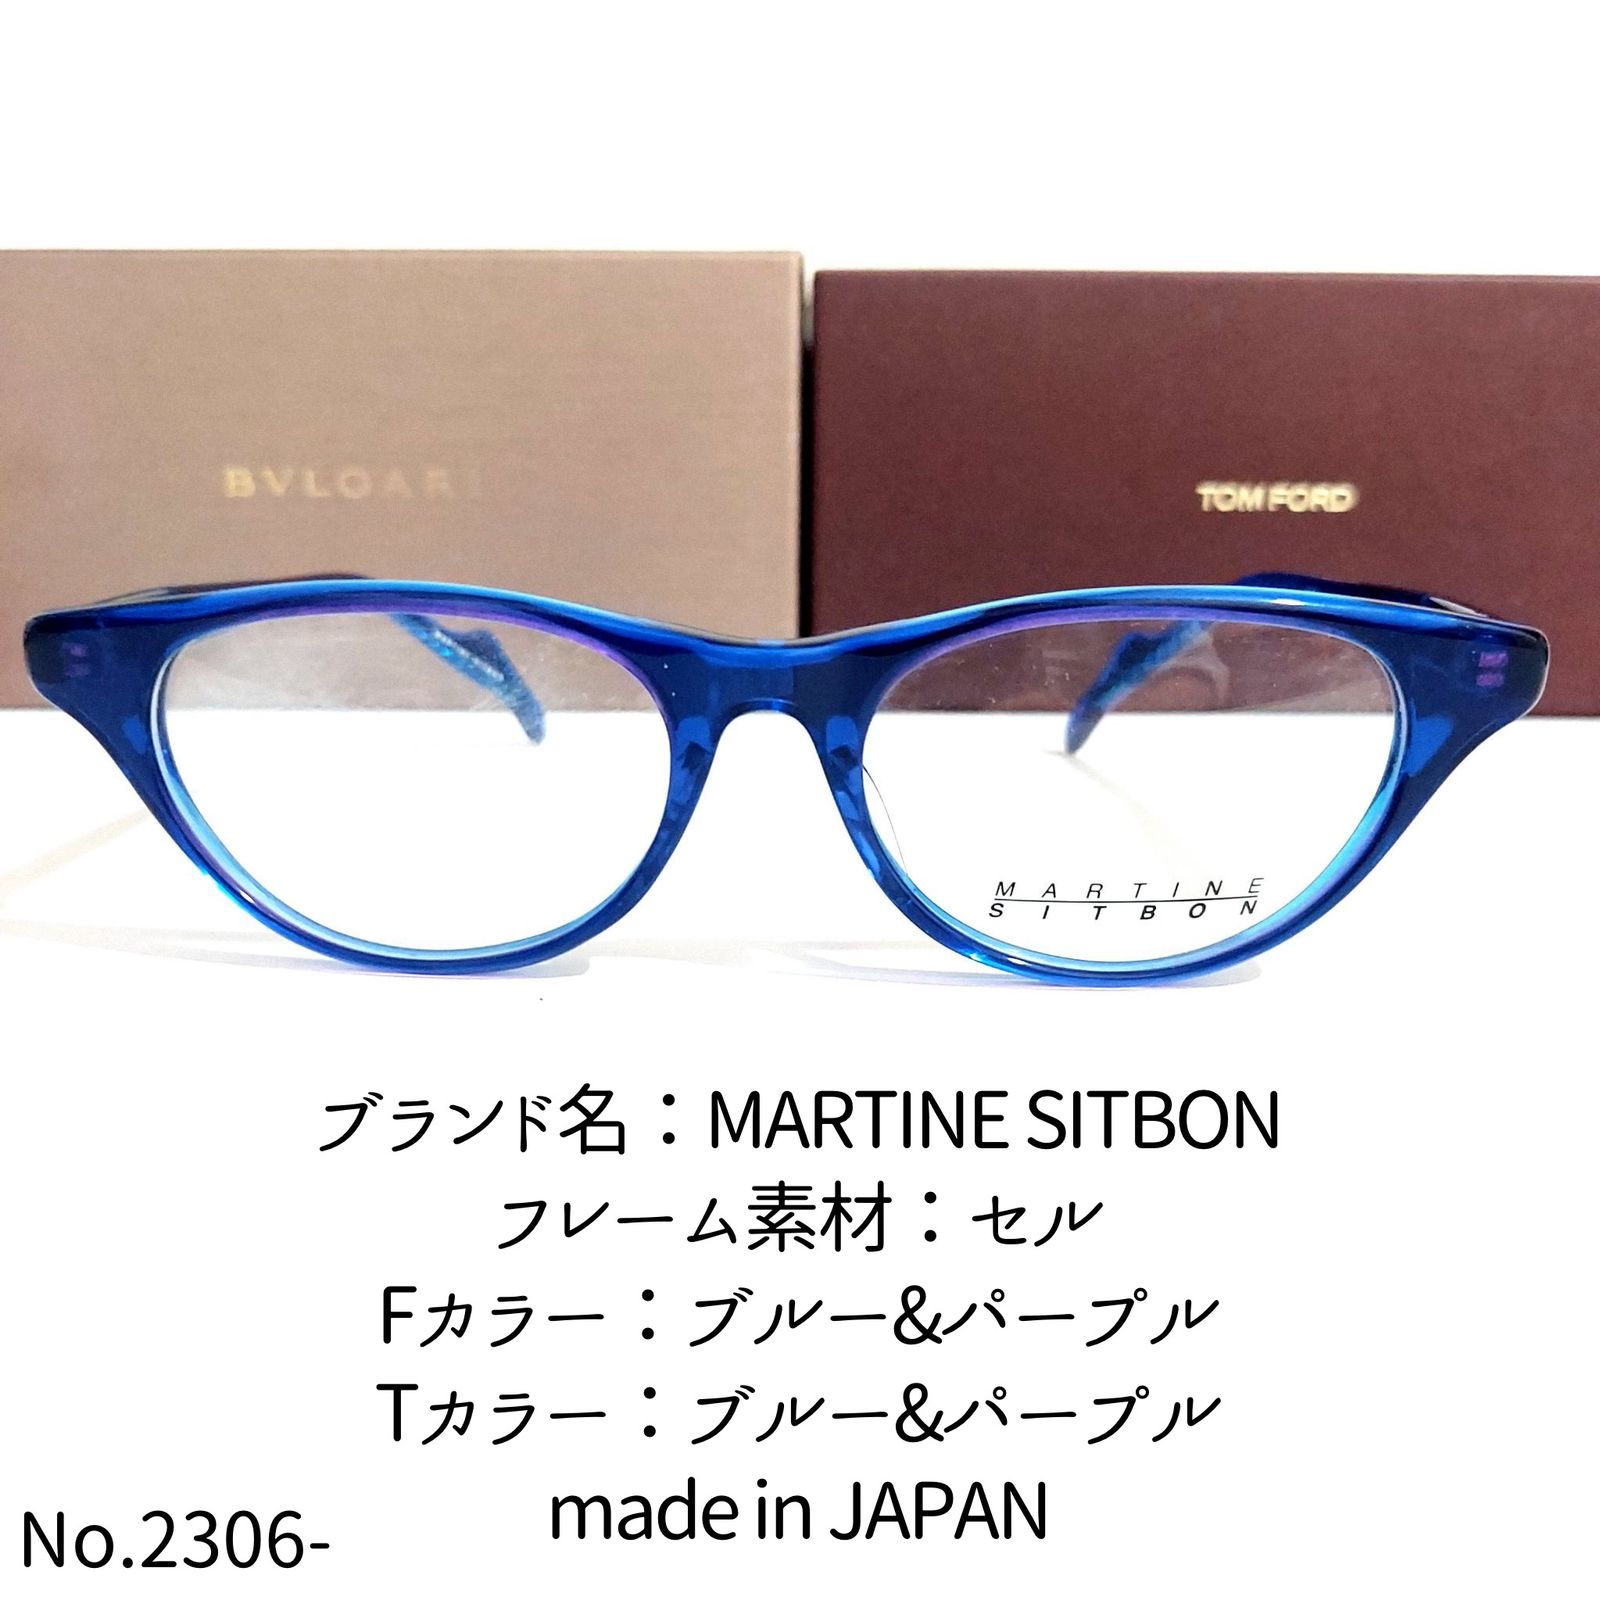 No.2306-メガネ MARTINE SITBON【フレームのみ価格】-